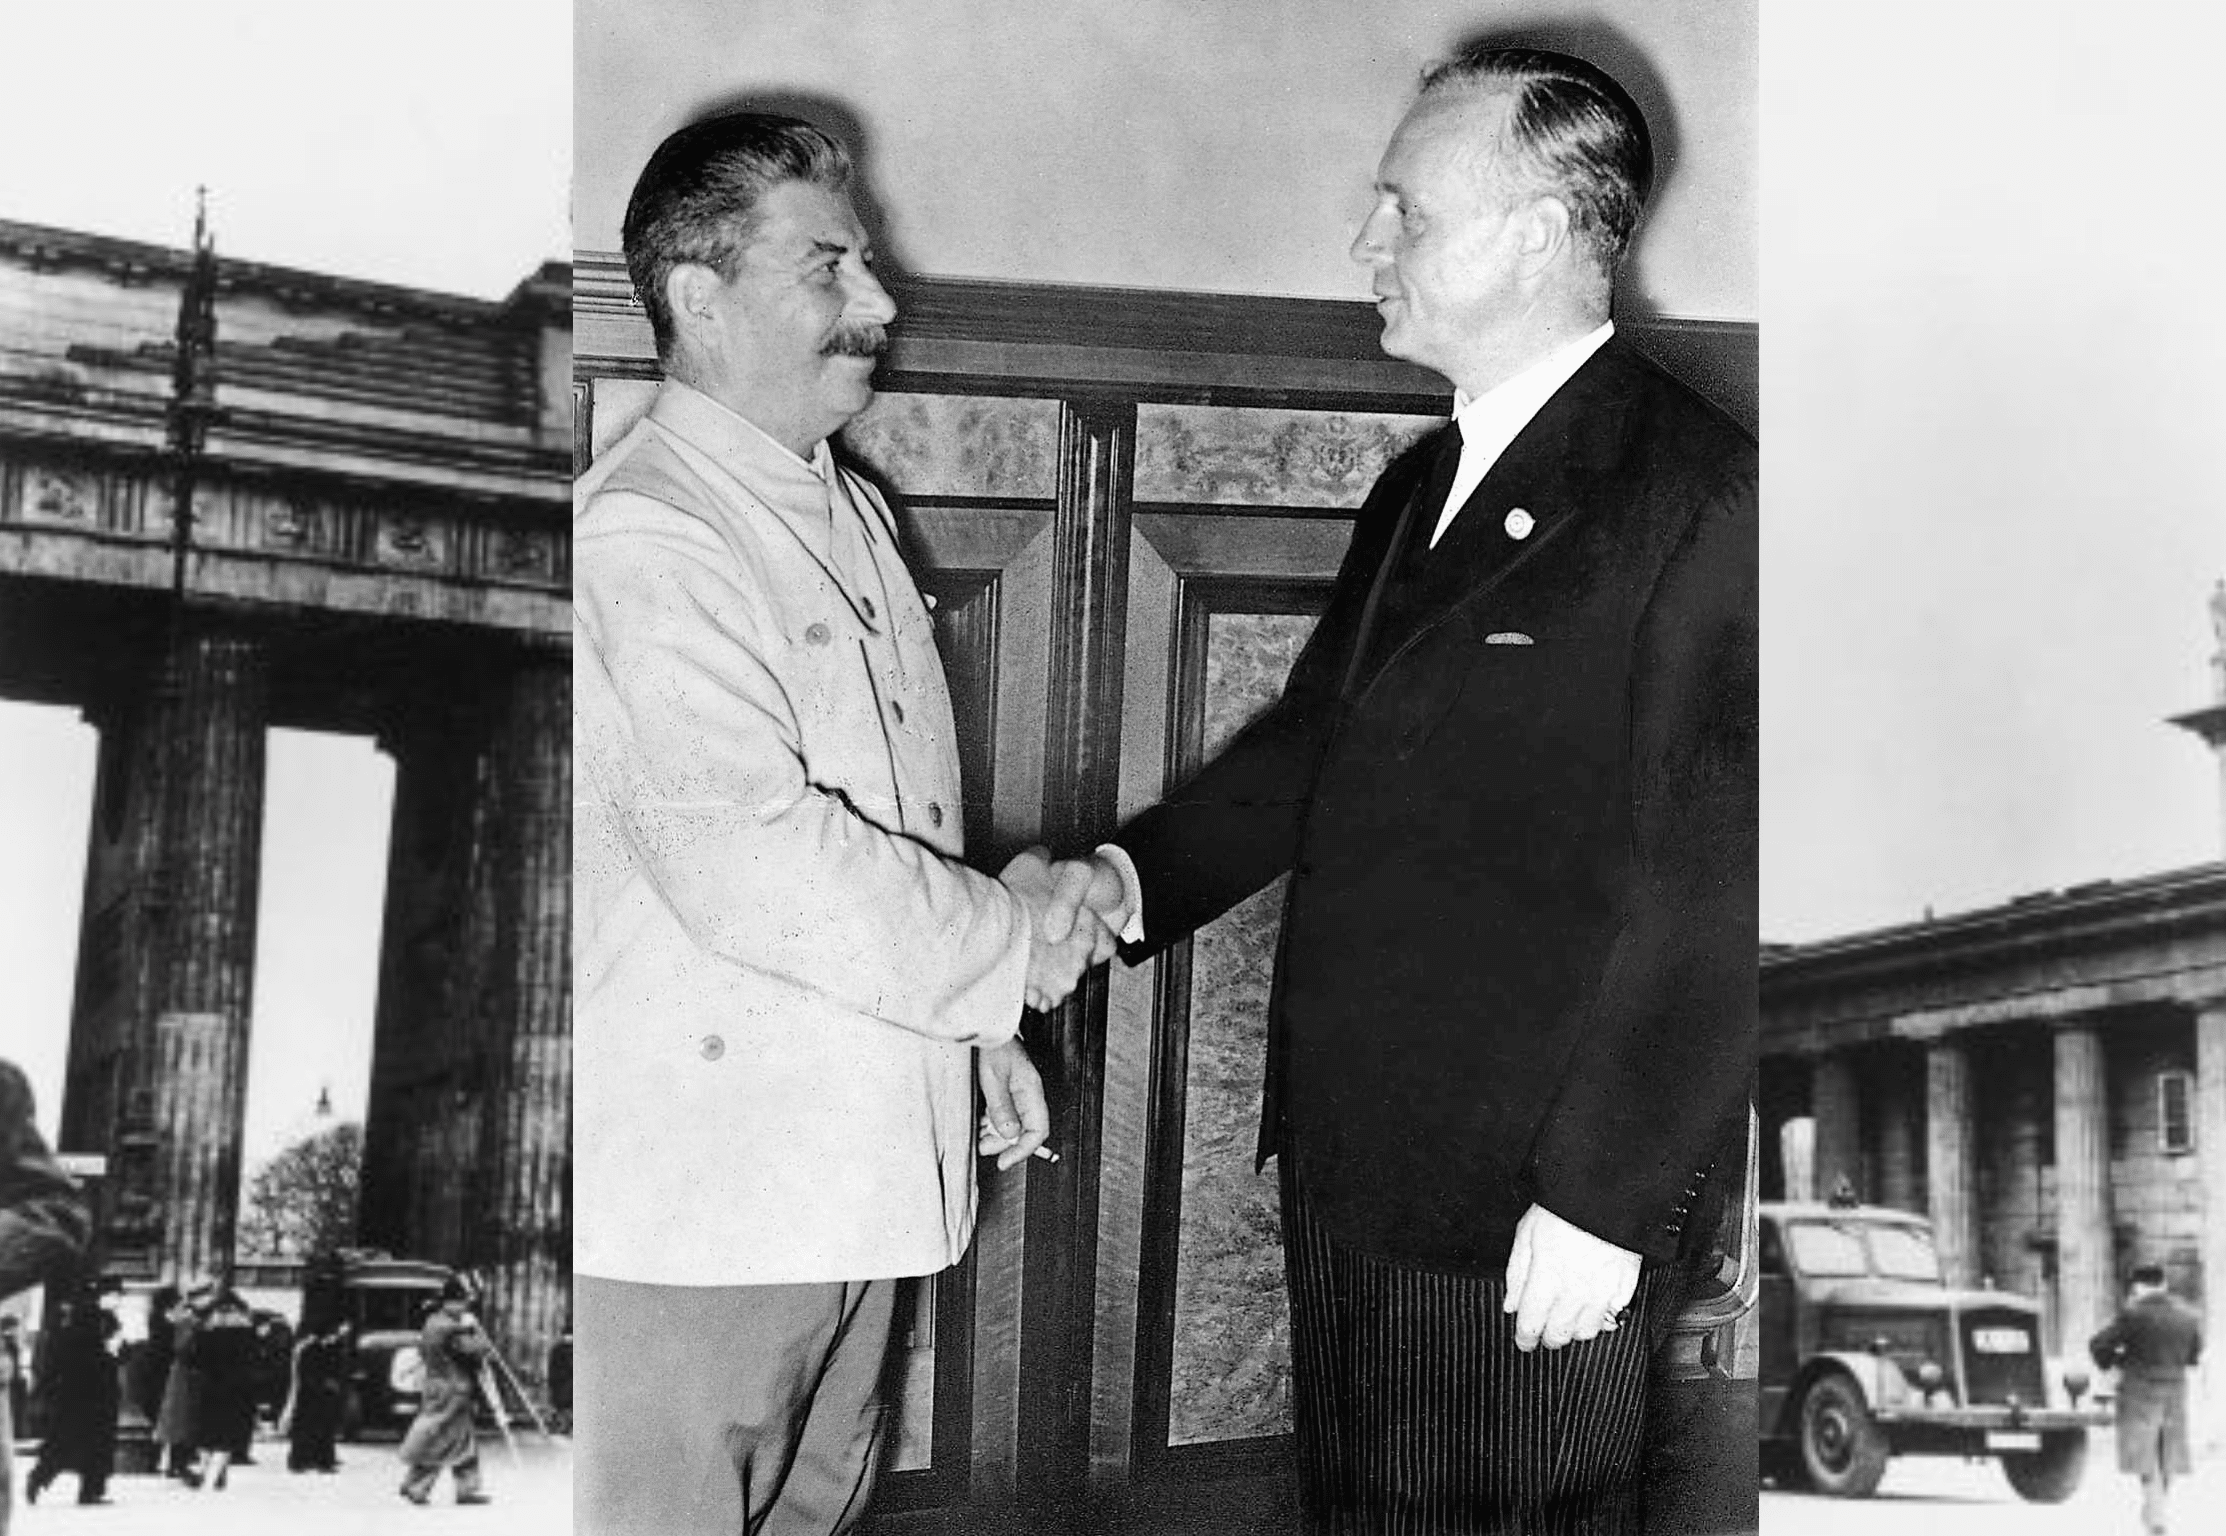 Staline et Ribbentrop se serrant la main après la signature du pacte au Kremlin de Moscou.
Wiki Commons